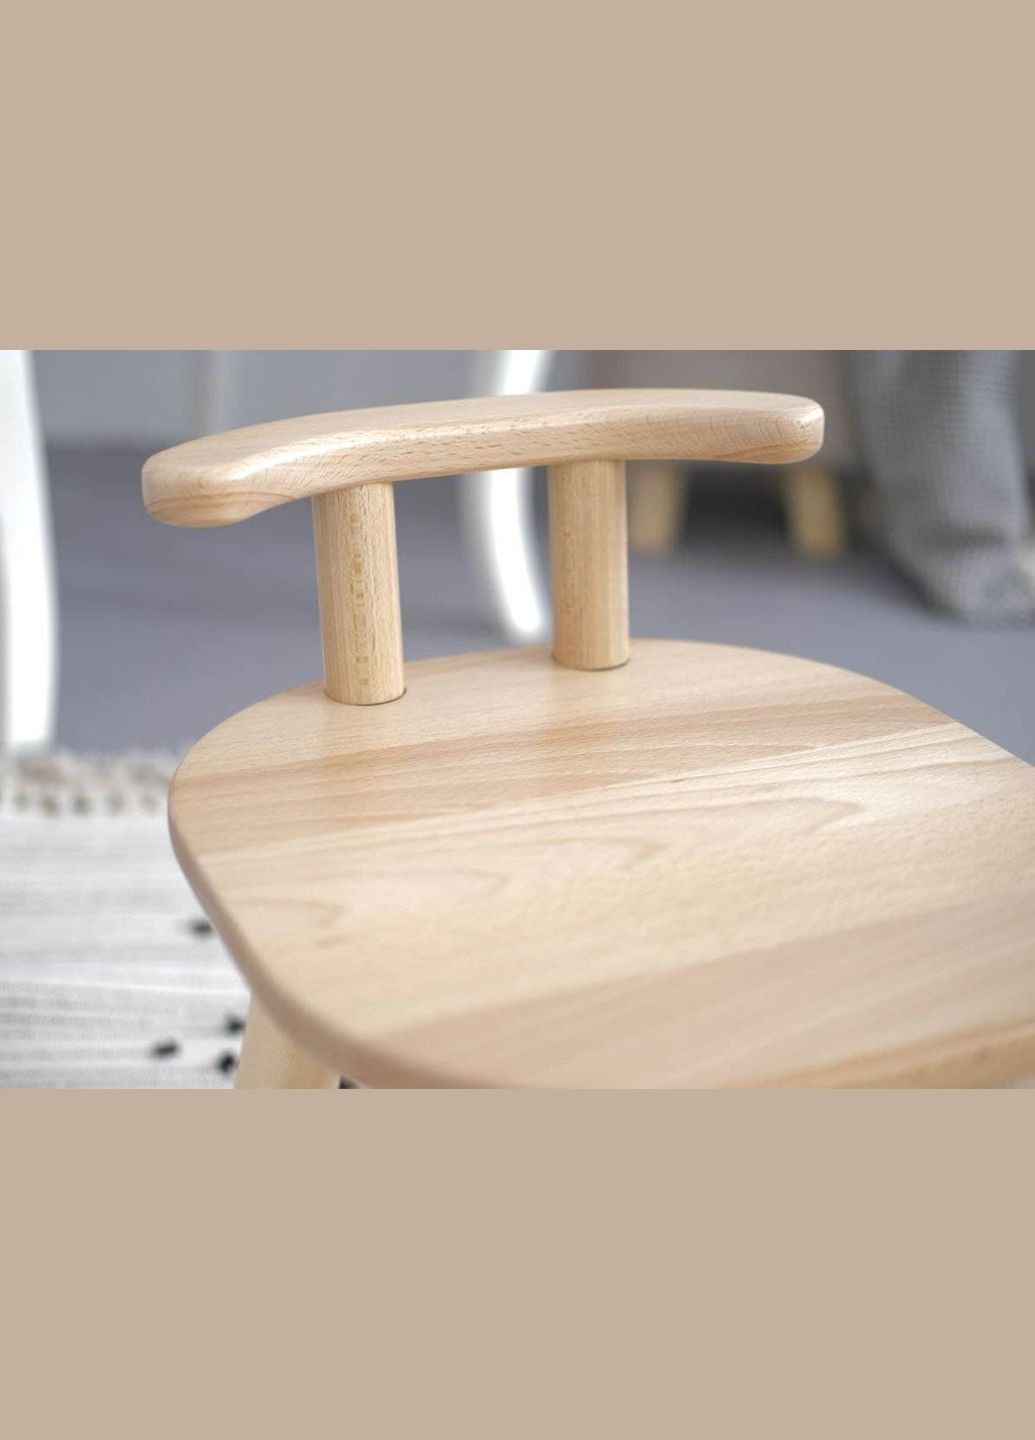 Стол и стул детские из бука для детей 2-4 лет с дополнительными ножками "на вырост" Tatoy (292564928)